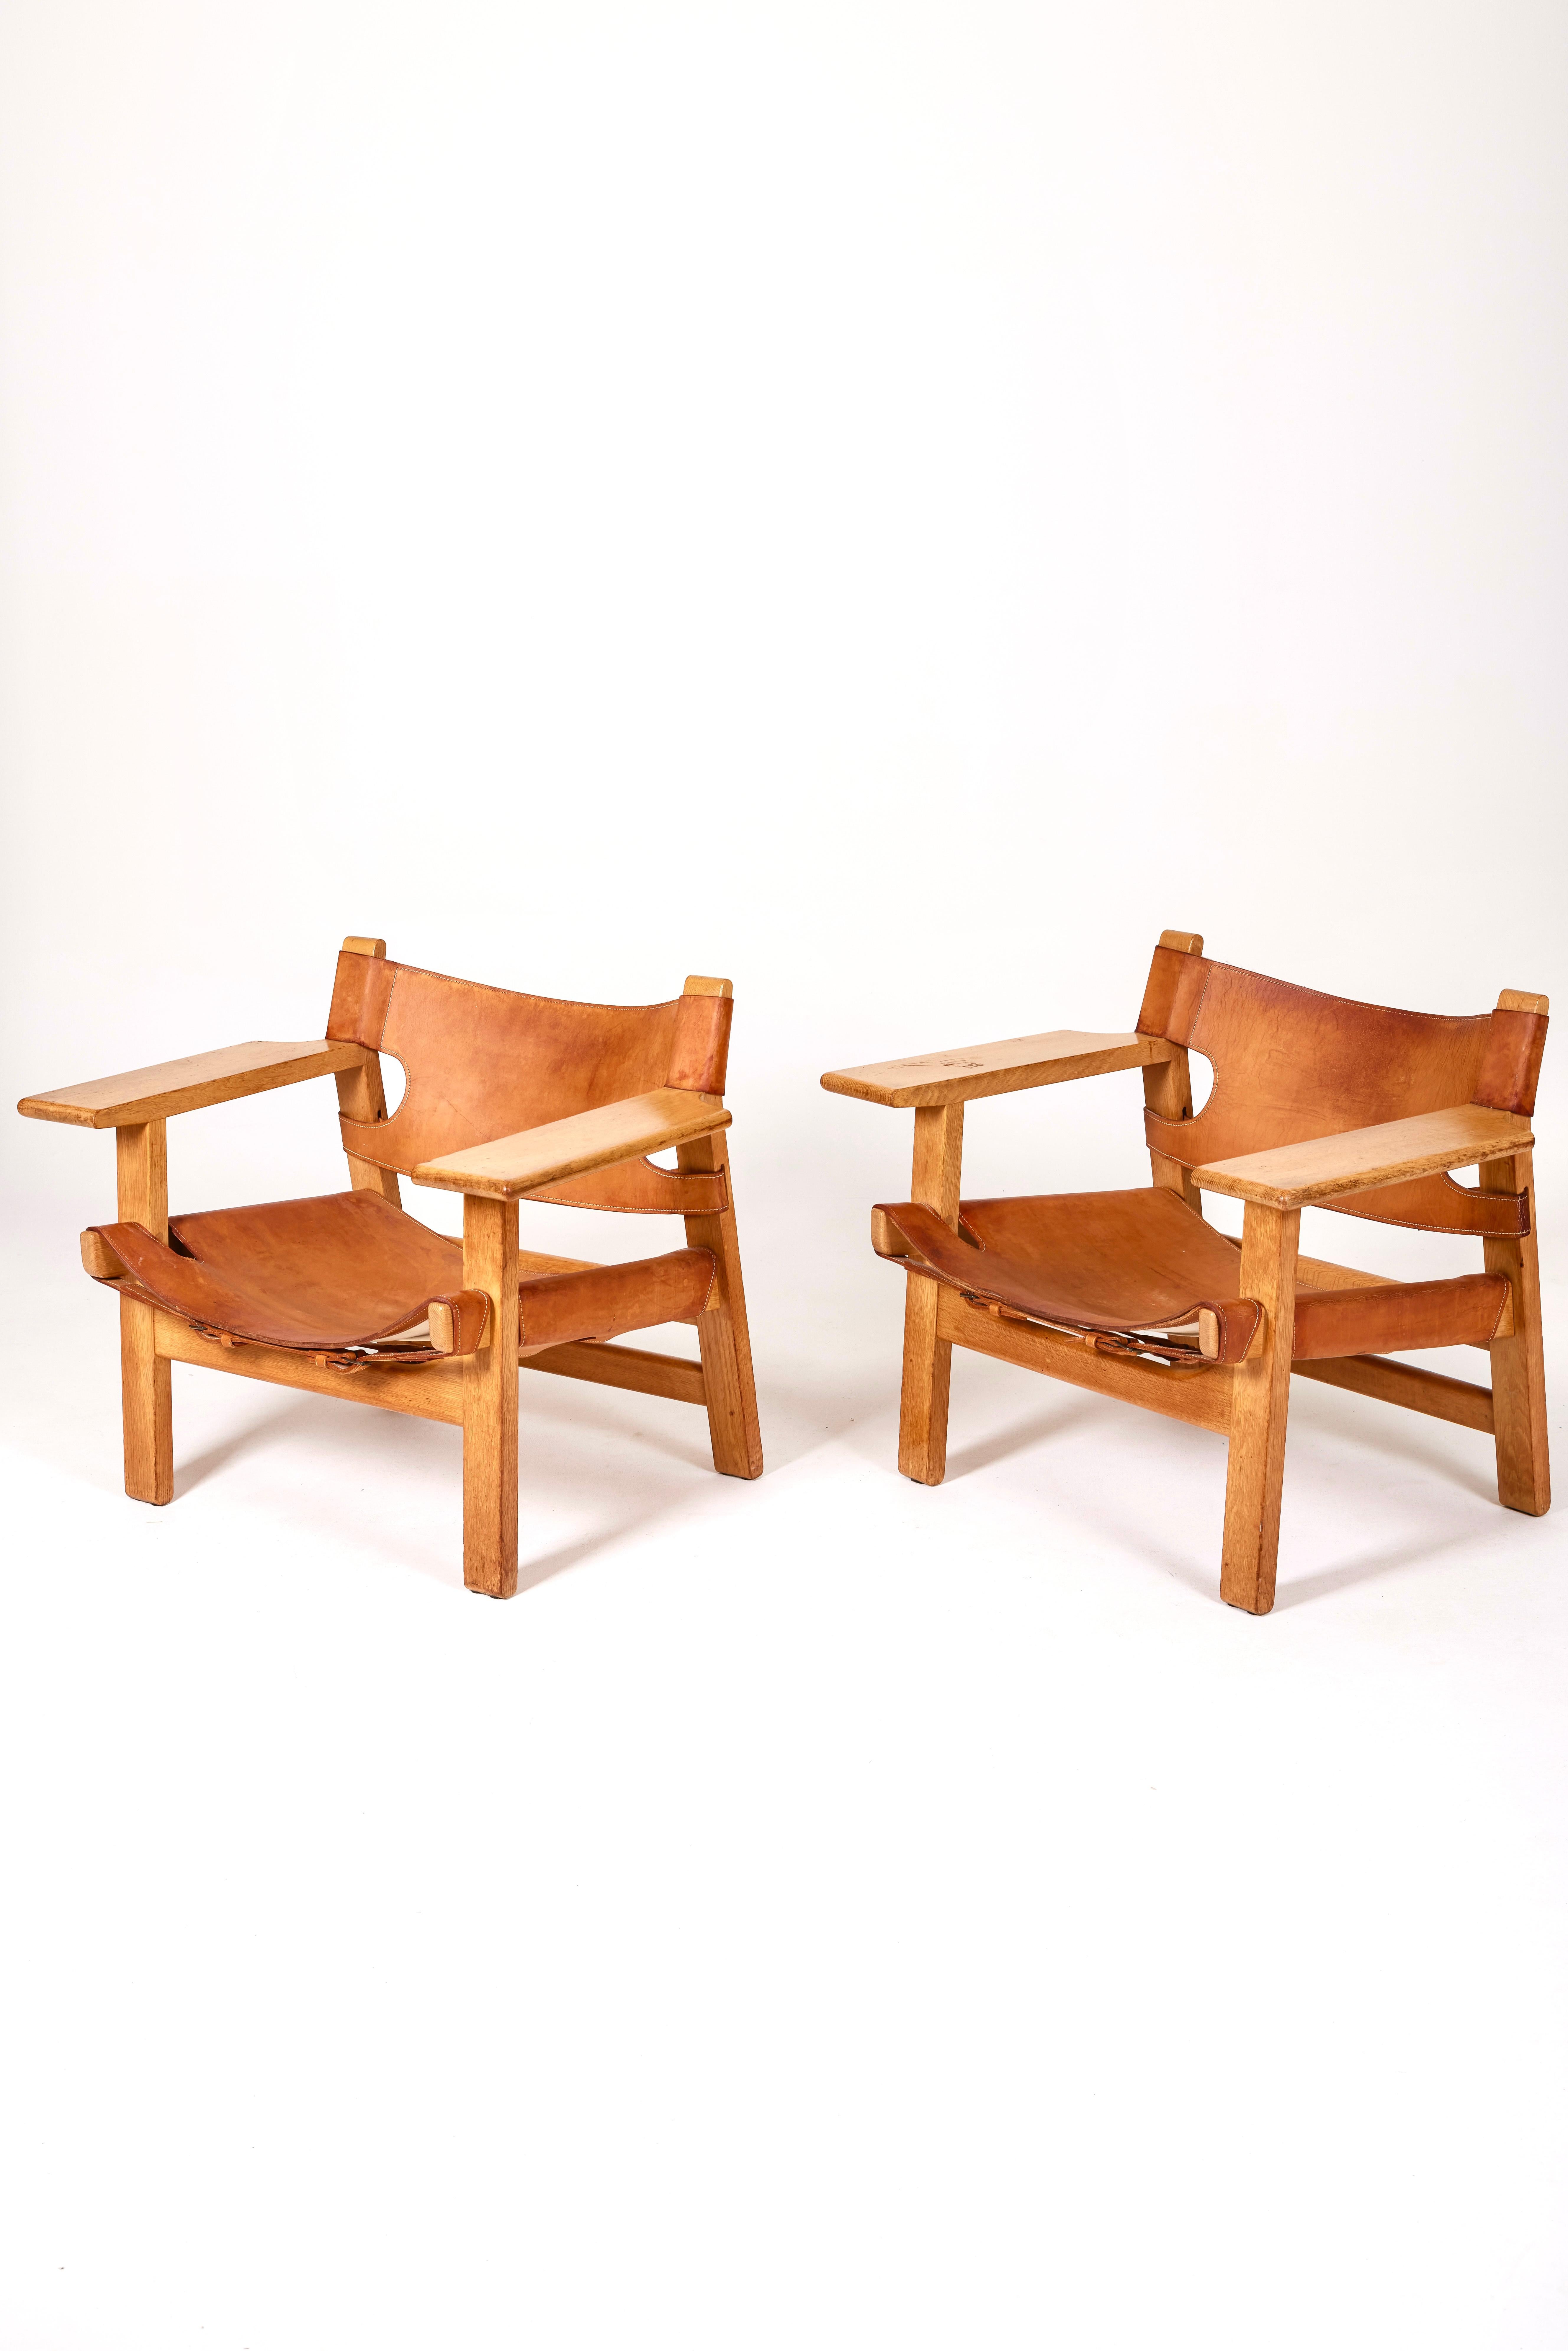 Sessel The Spanish Chair Modell BM2226 des dänischen Designers Børge Mogensen, 1960er Jahre. Der Rahmen ist aus Eichenholz gefertigt. Die Sitzfläche und die Rückenlehne sind aus abgenutztem braunem Originalleder. Einige Zeichen der Zeit zu